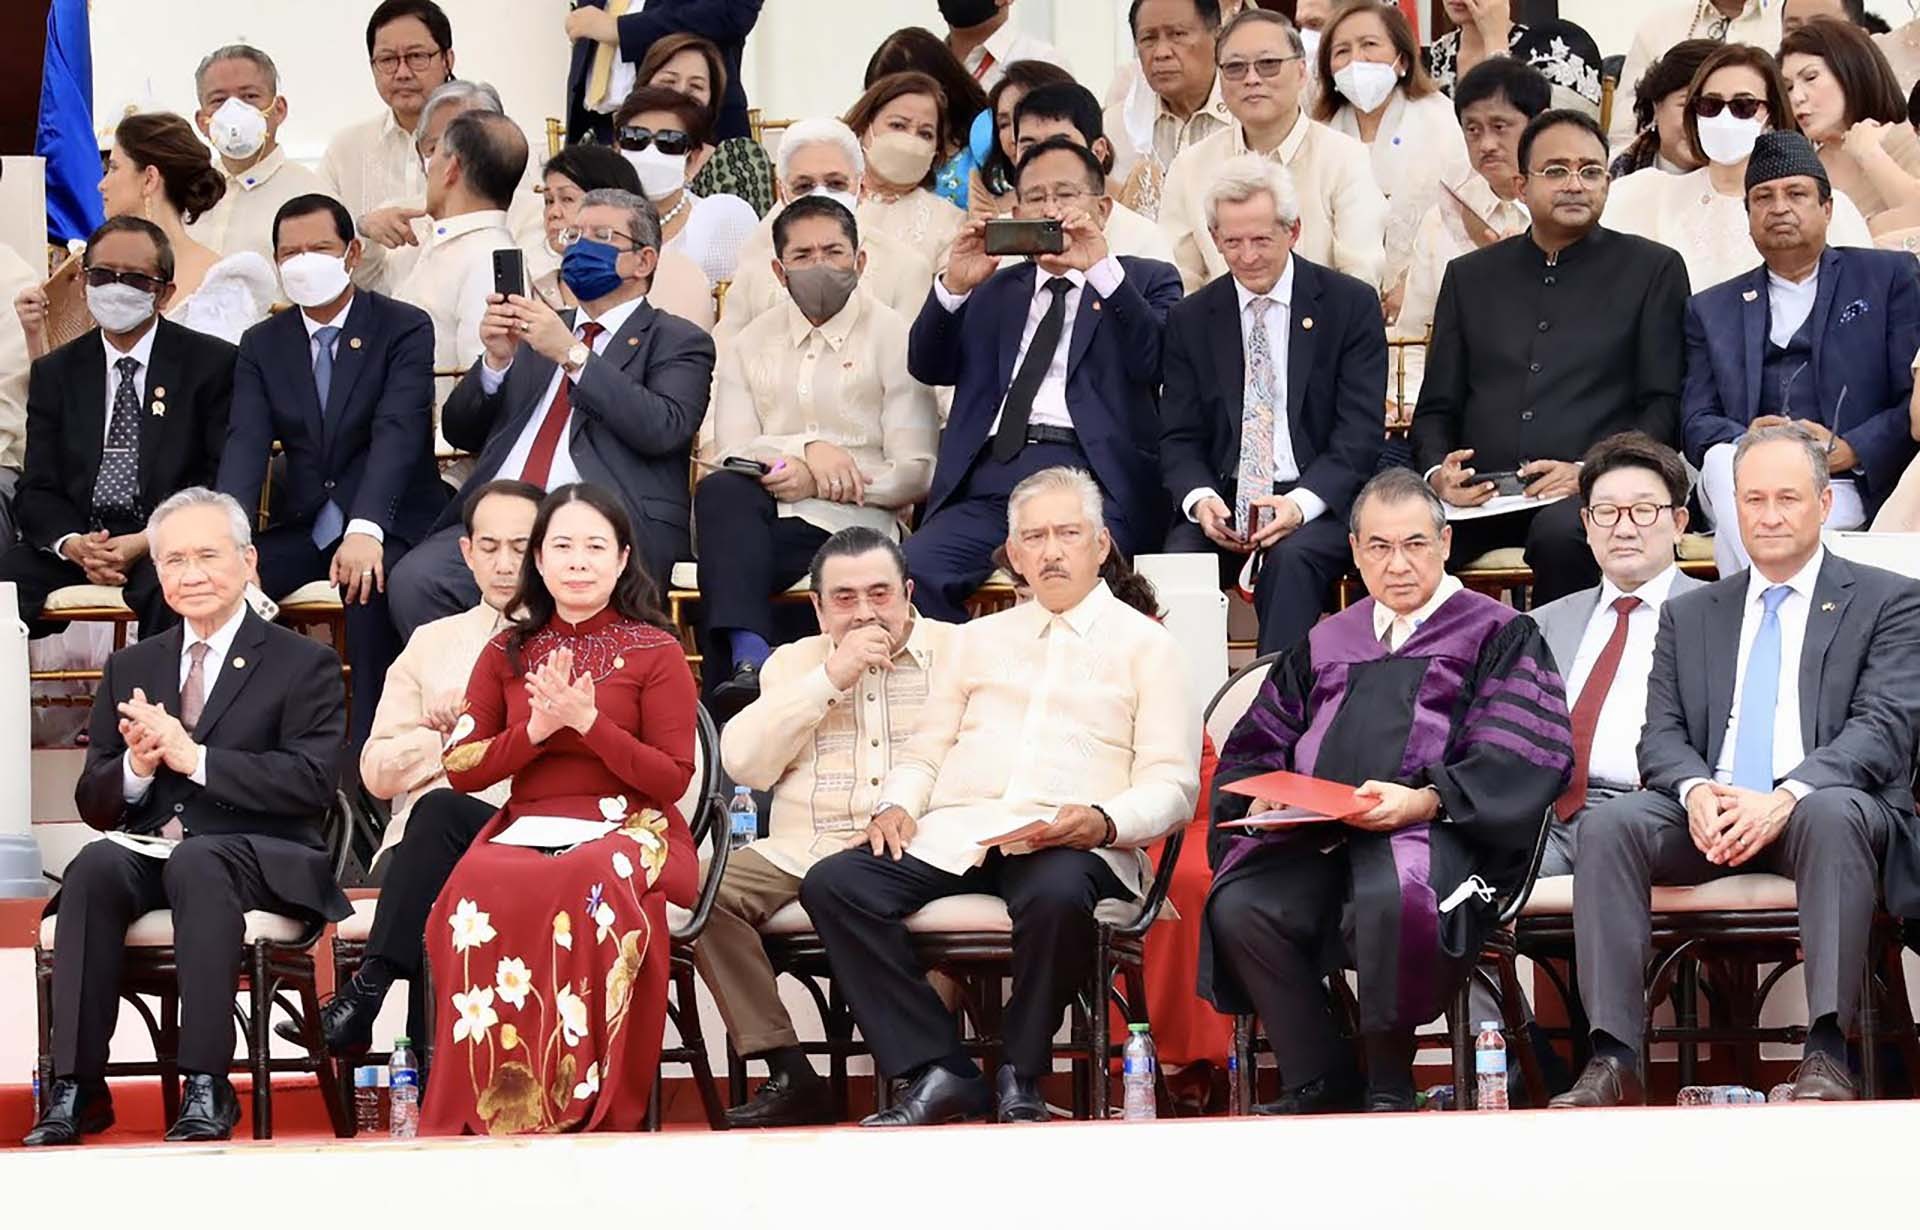 Phó Chủ tịch nước Võ Thị Ánh Xuân đã thay mặt Chủ tịch nước Nguyễn Xuân Phúc dẫn đầu đoàn đại biểu Việt Nam tham dự Lễ tuyên thệ nhậm chức của Tổng thống Philippines nhiệm kỳ 2022-2028